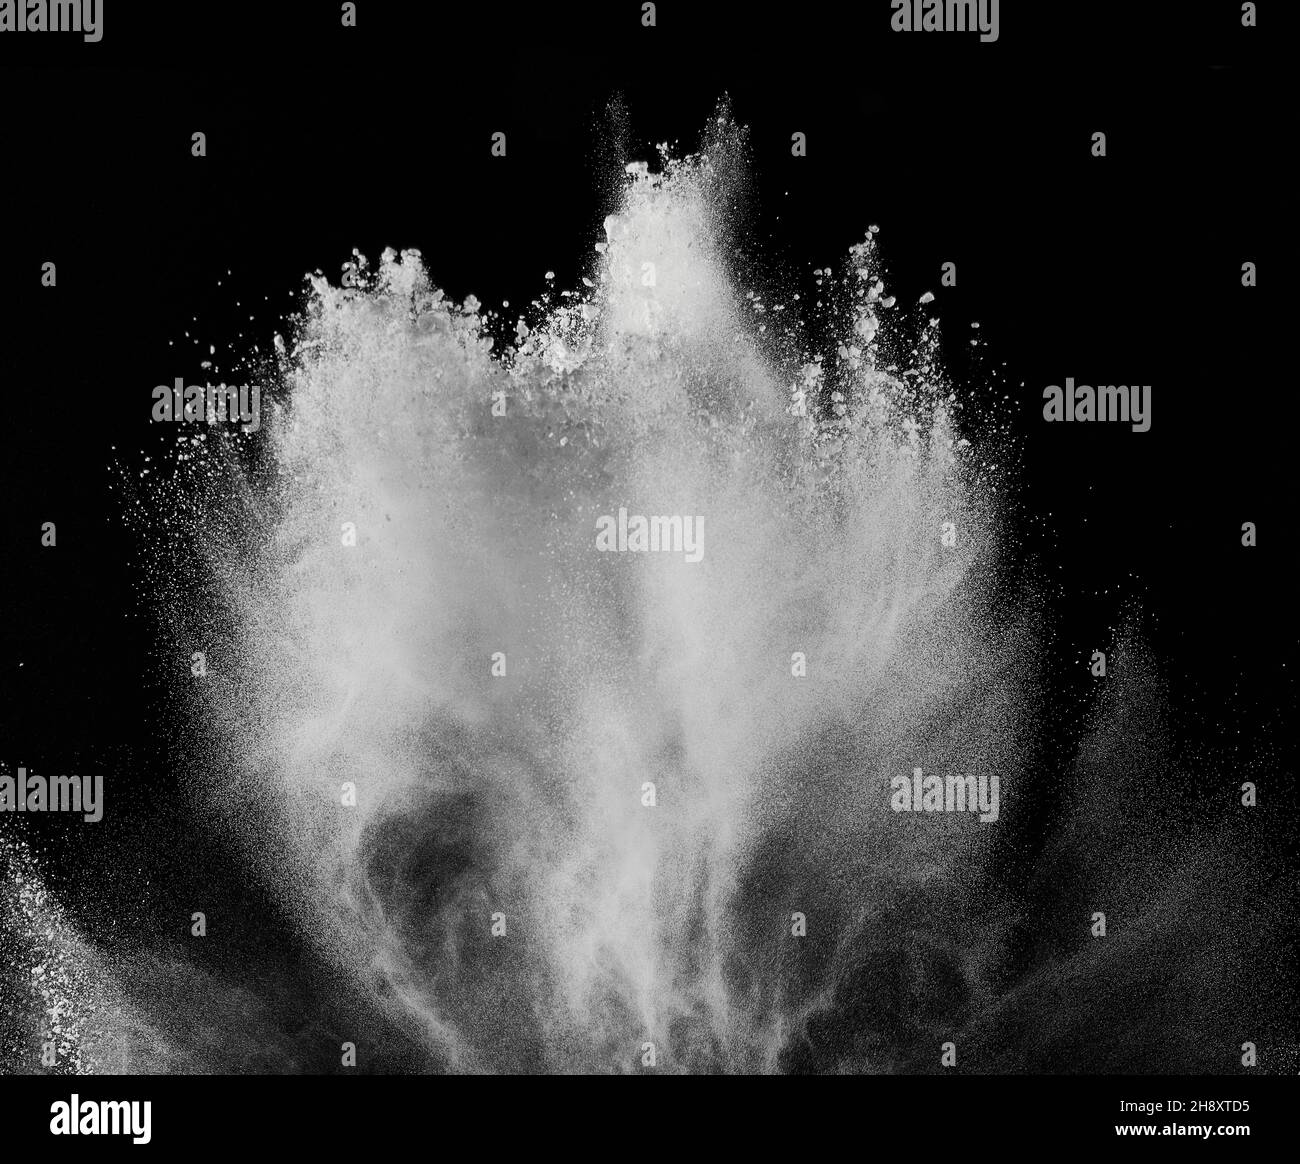 fumée poudre explosion air fond forme poussière noire explosion farine inredient peinture fumée nuage de boue Banque D'Images